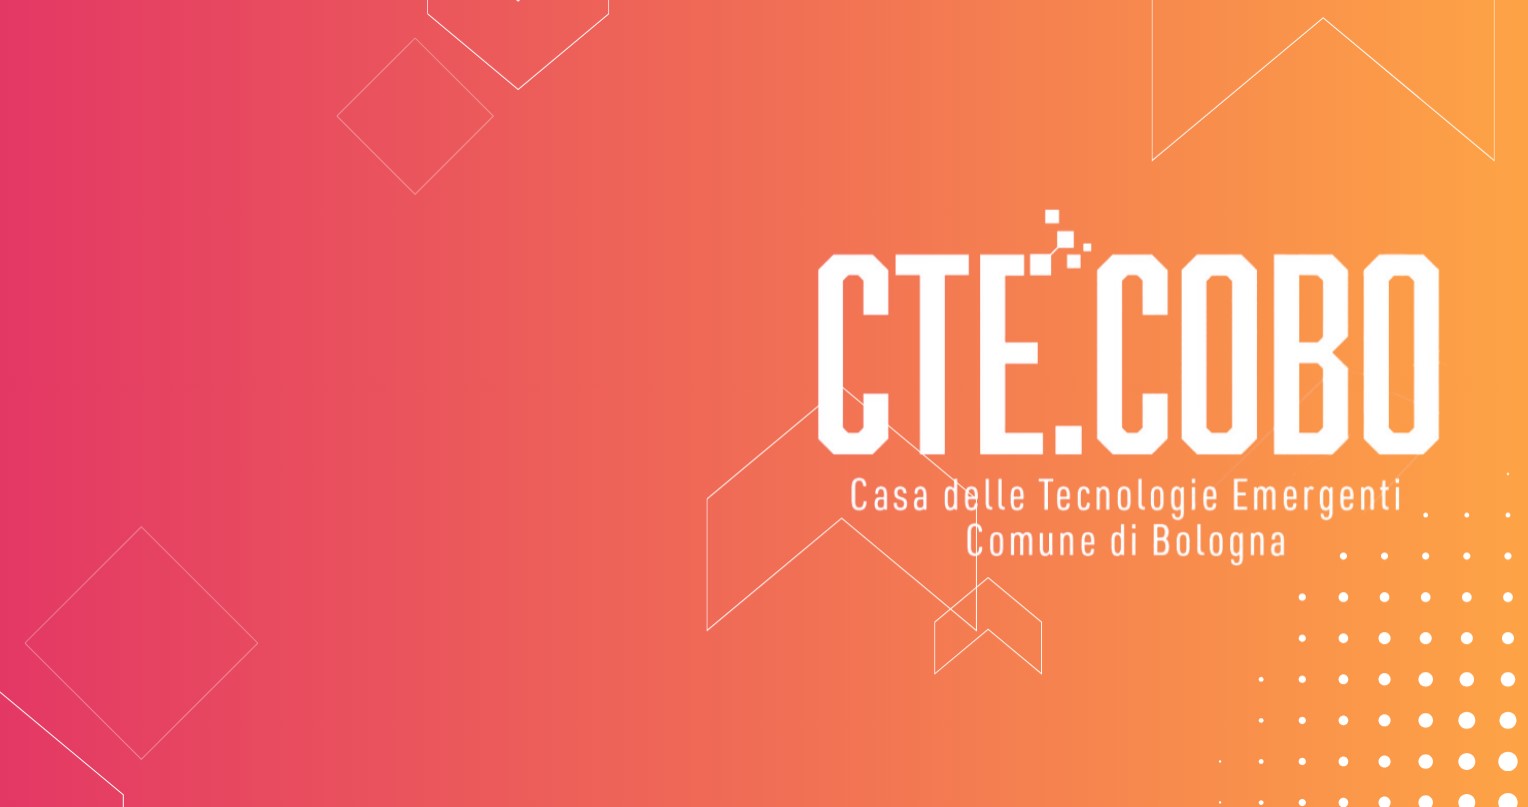 Webinar: Presentazione dei bandi Open Innovation e Tech Transfer di CTE COBO